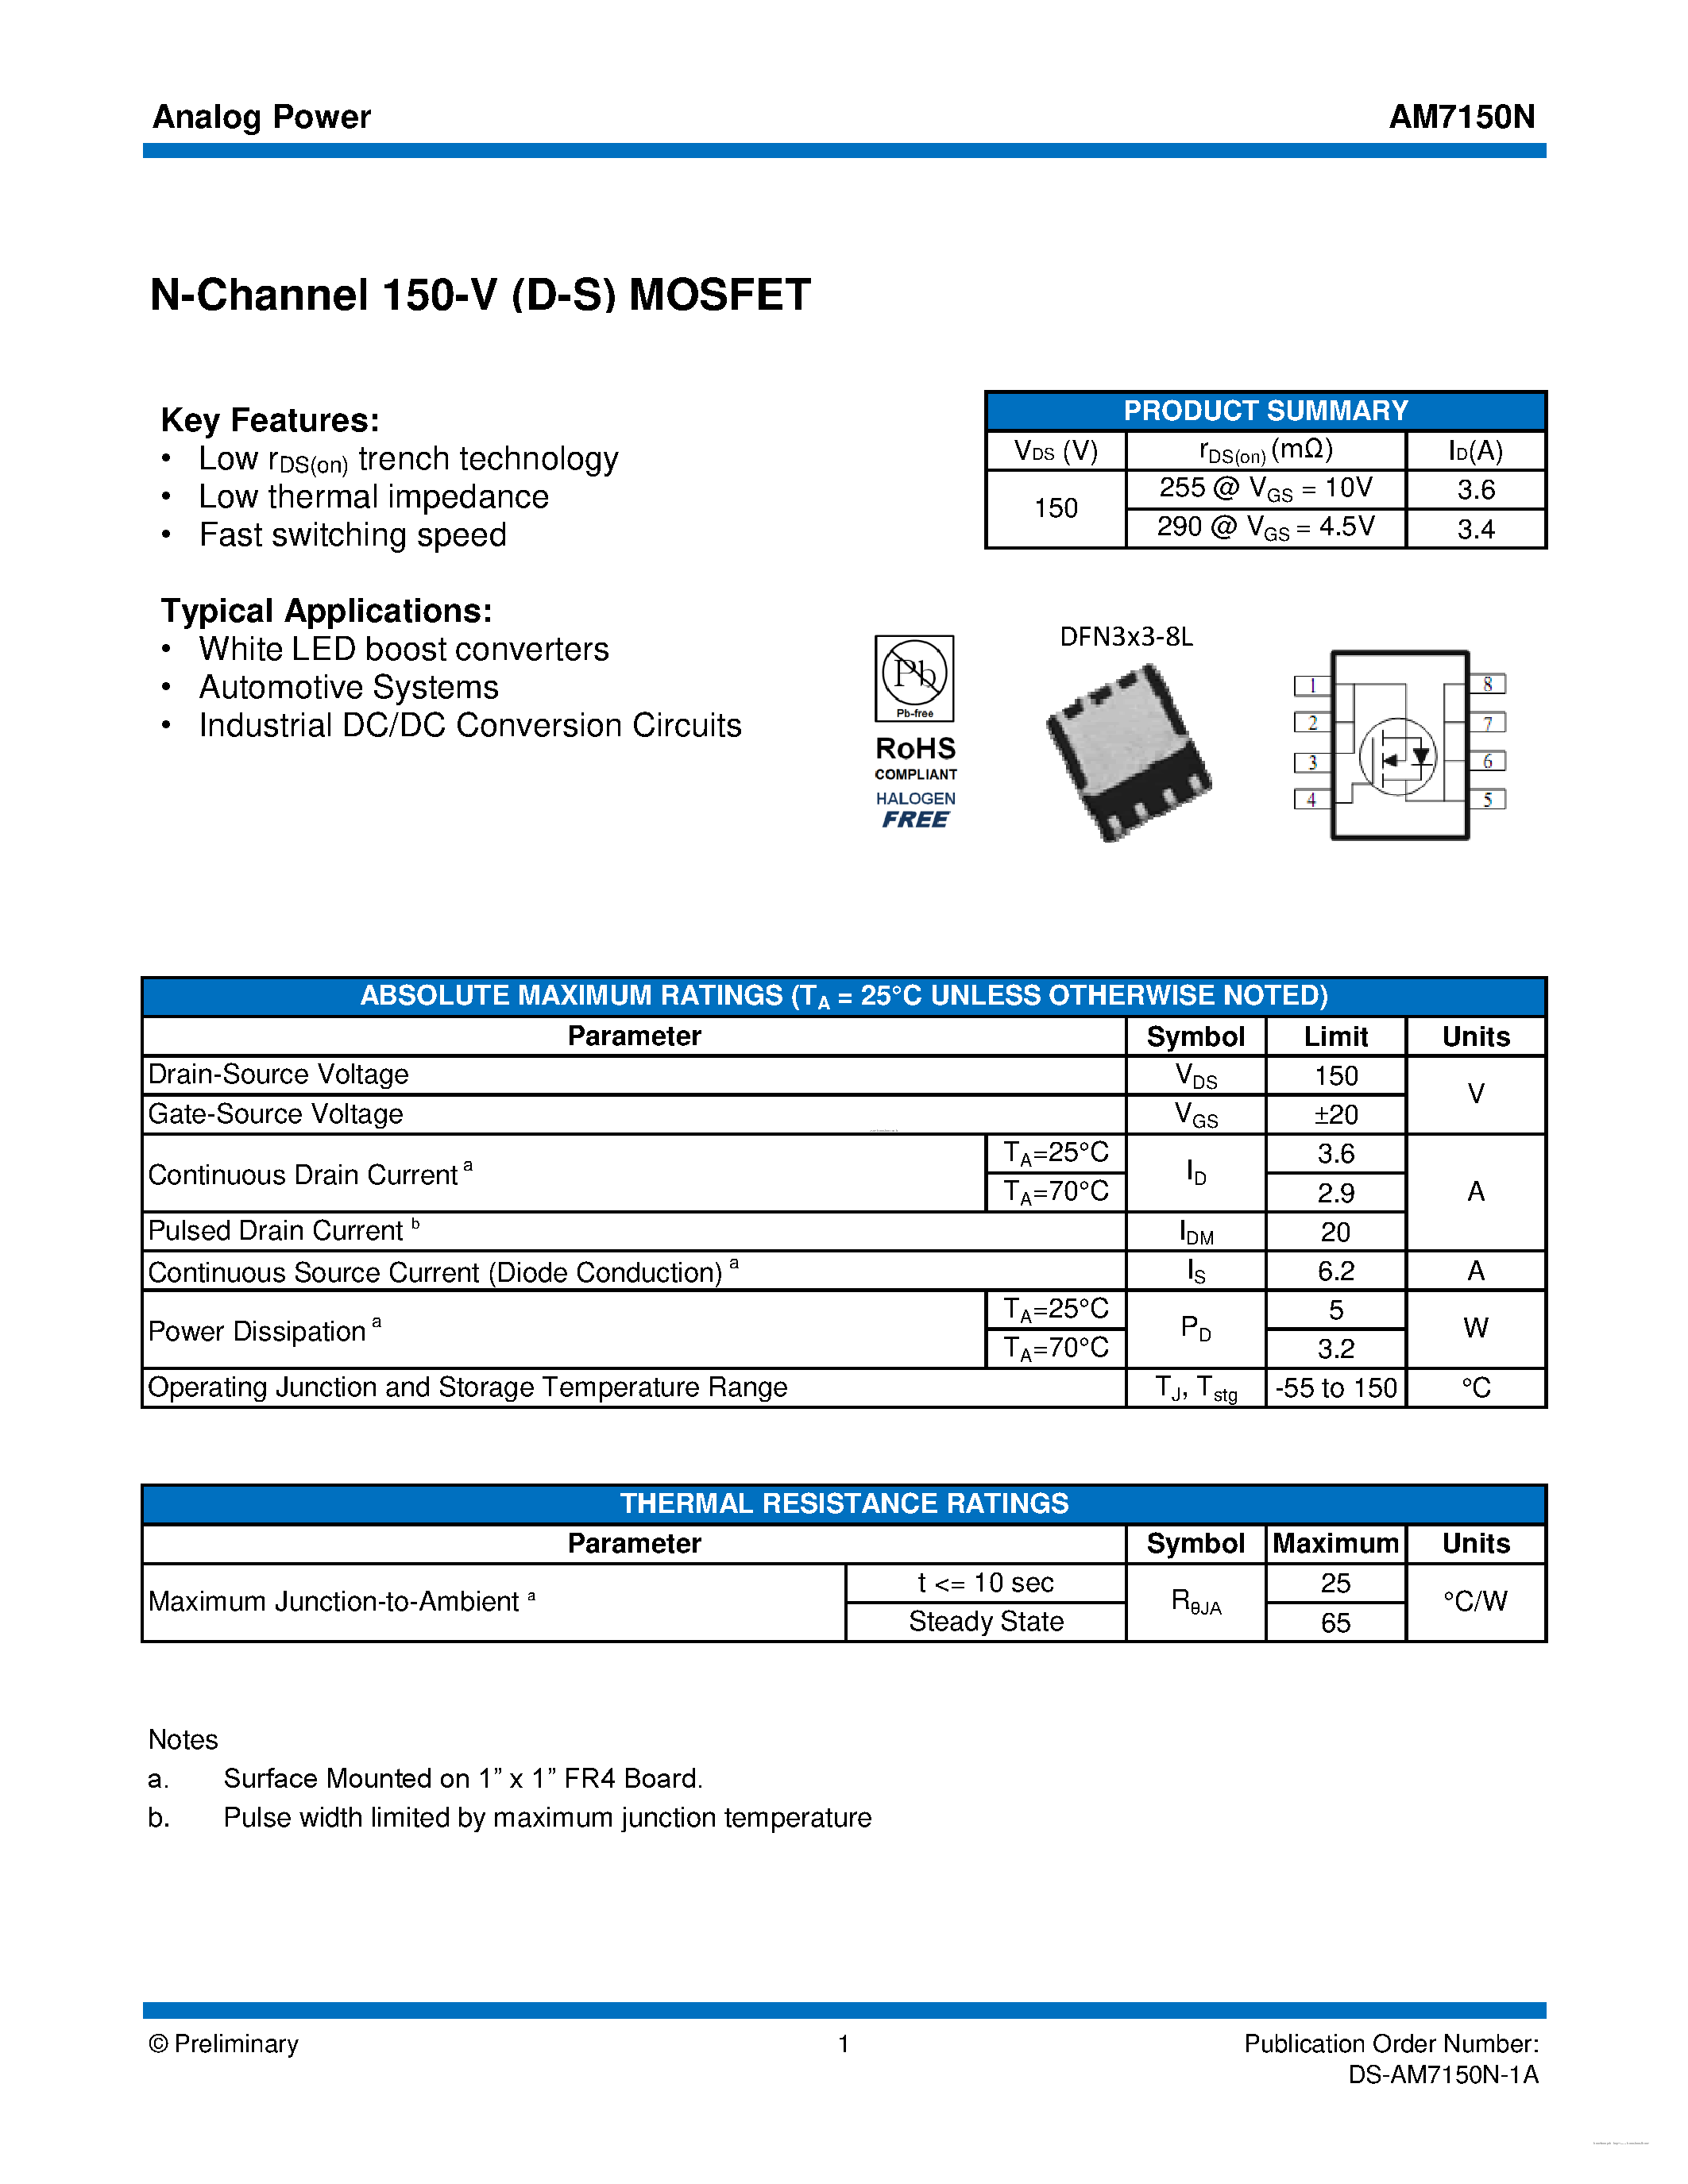 Даташит AM7150N - MOSFET страница 1